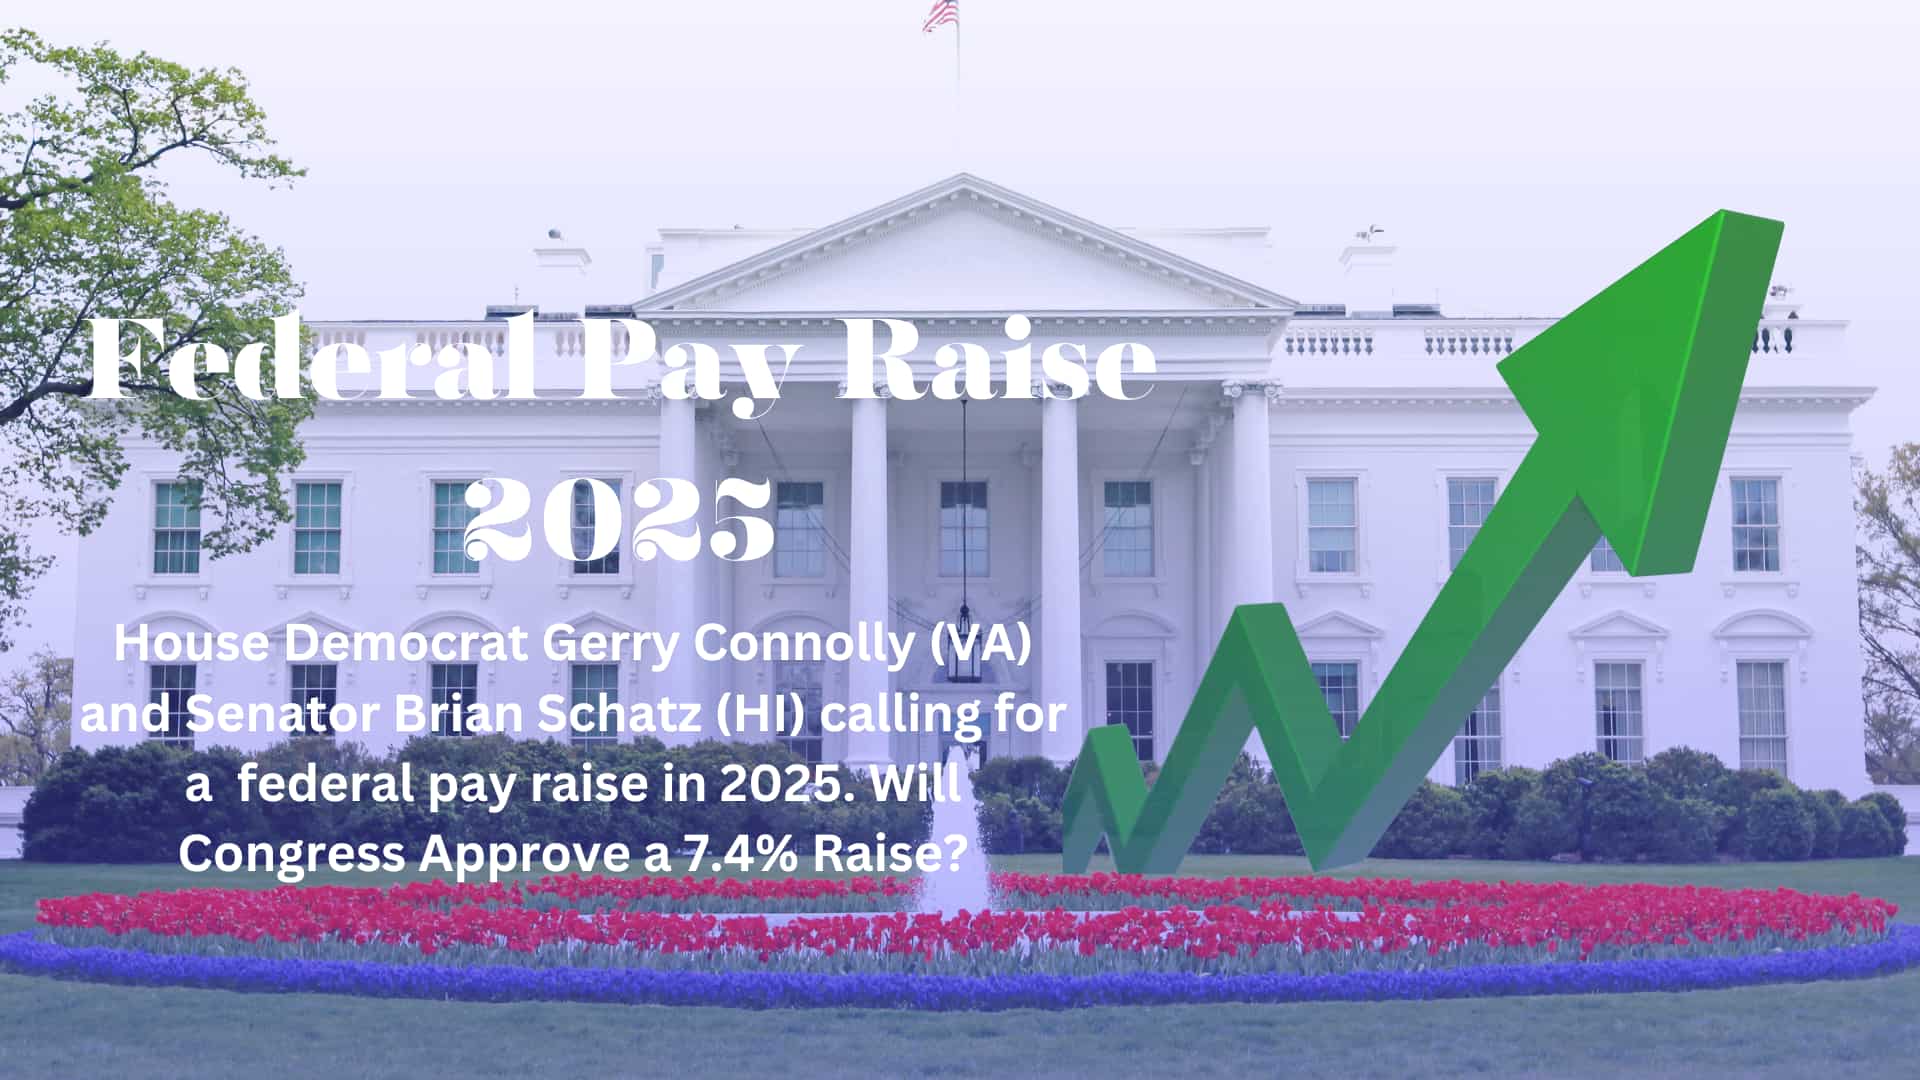 Federal Pay Raise 2025